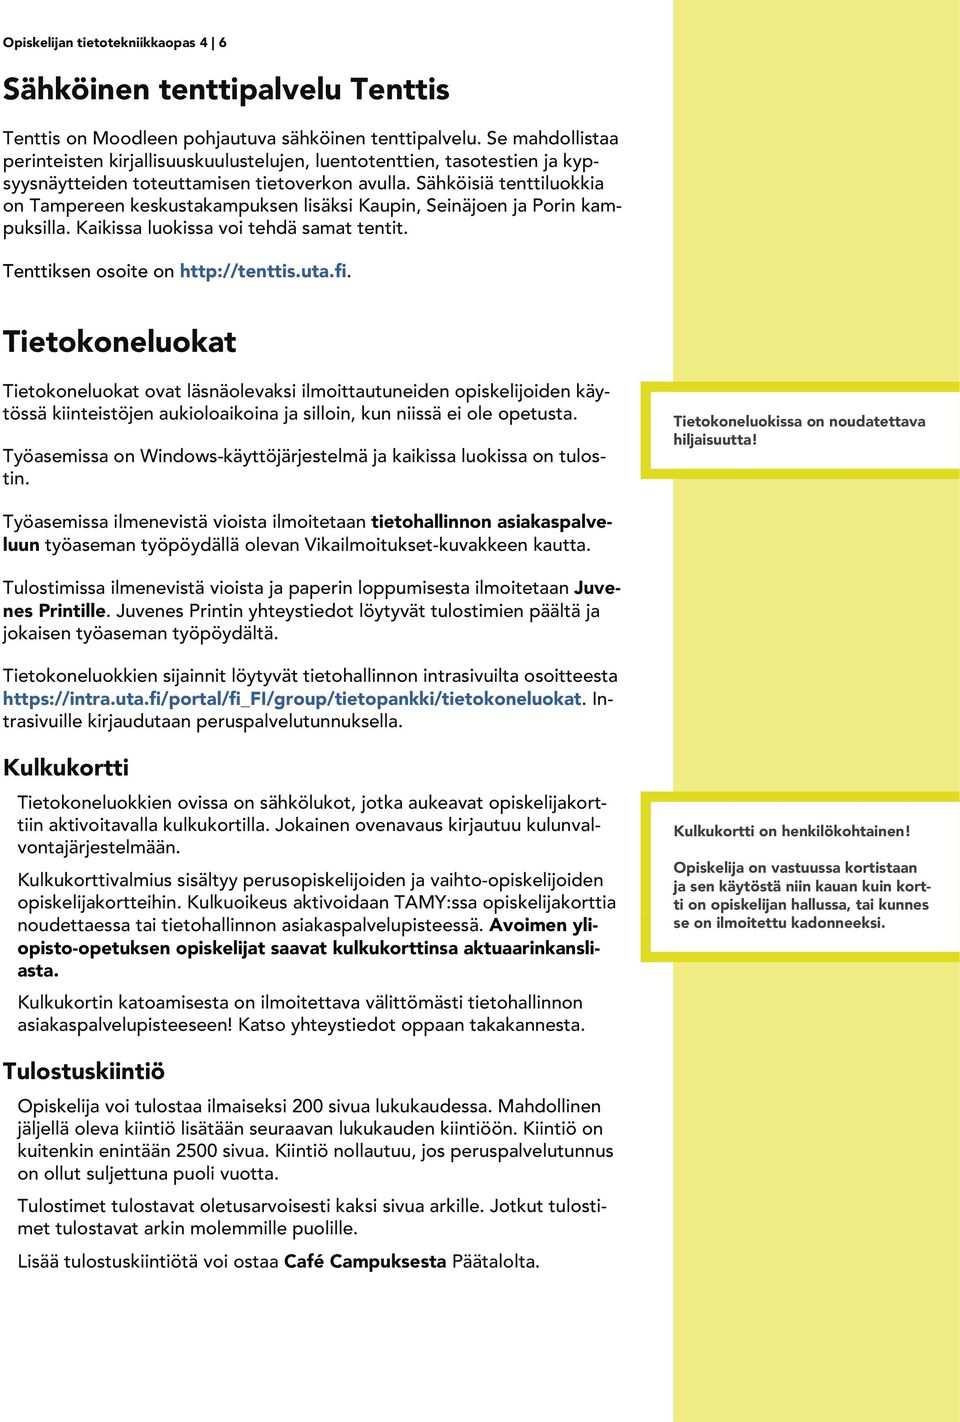 Sähköisiä tenttiluokkia on Tampereen keskustakampuksen lisäksi Kaupin, Seinäjoen ja Porin kampuksilla. Kaikissa luokissa voi tehdä samat tentit. Tenttiksen osoite on http://tenttis.uta.fi.